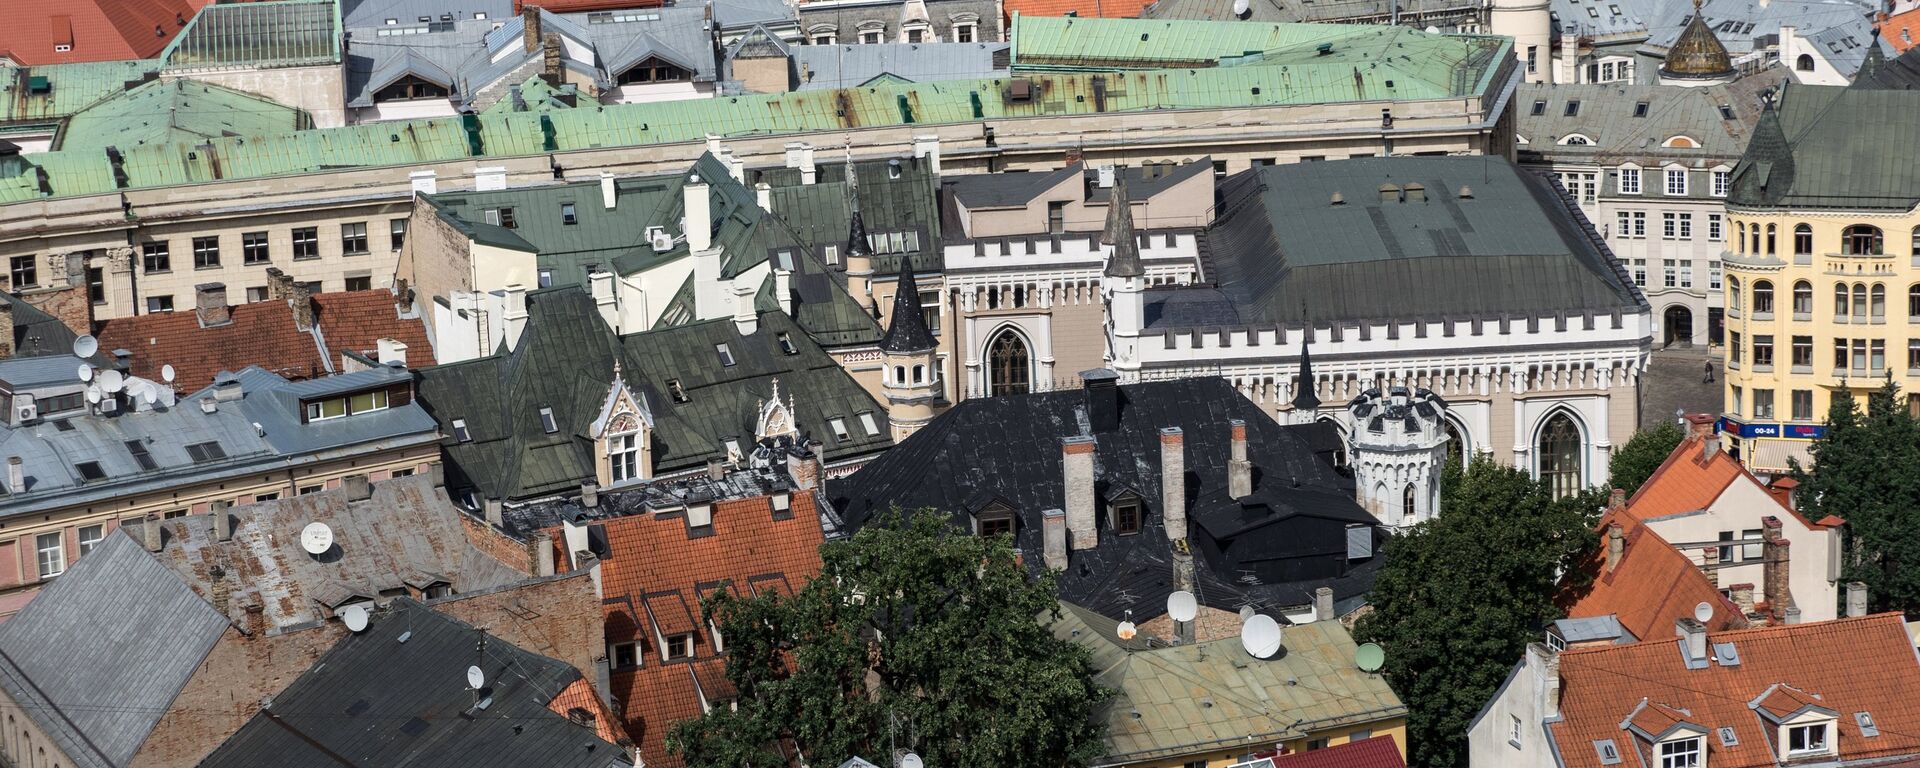 Крыши старого города в Риге в Латвии - Sputnik Латвия, 1920, 30.10.2019